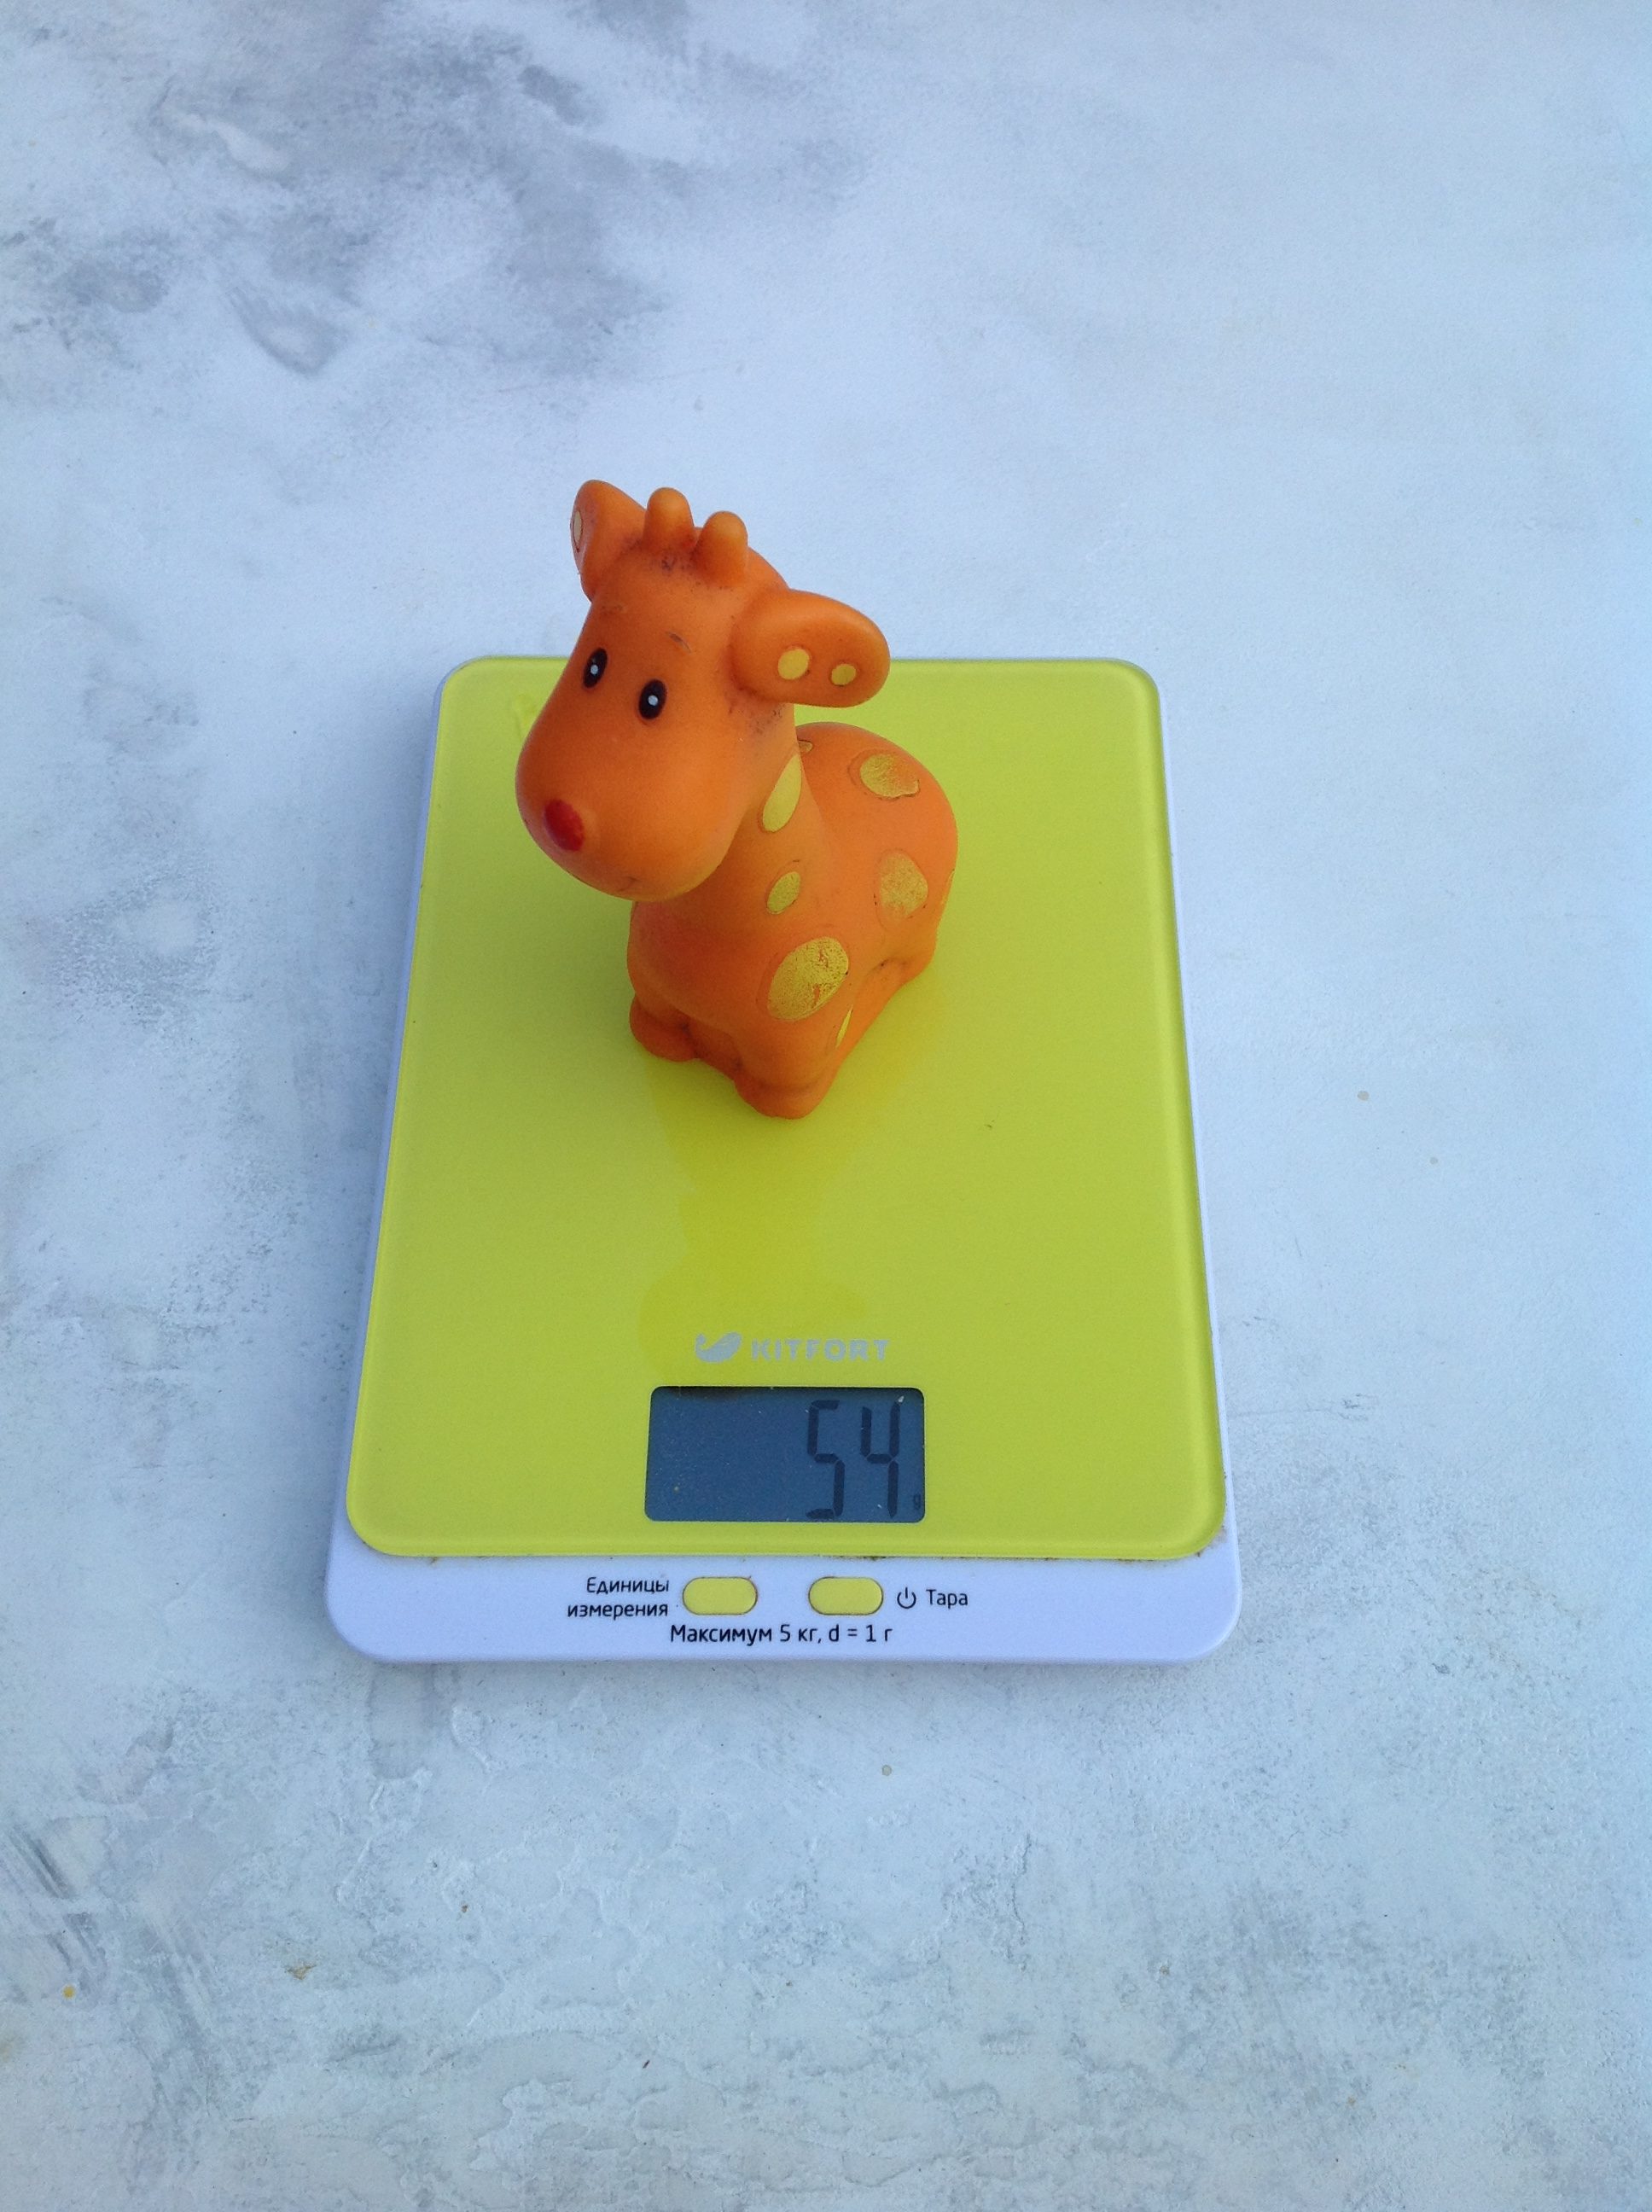 小型橡胶长颈鹿玩具的重量